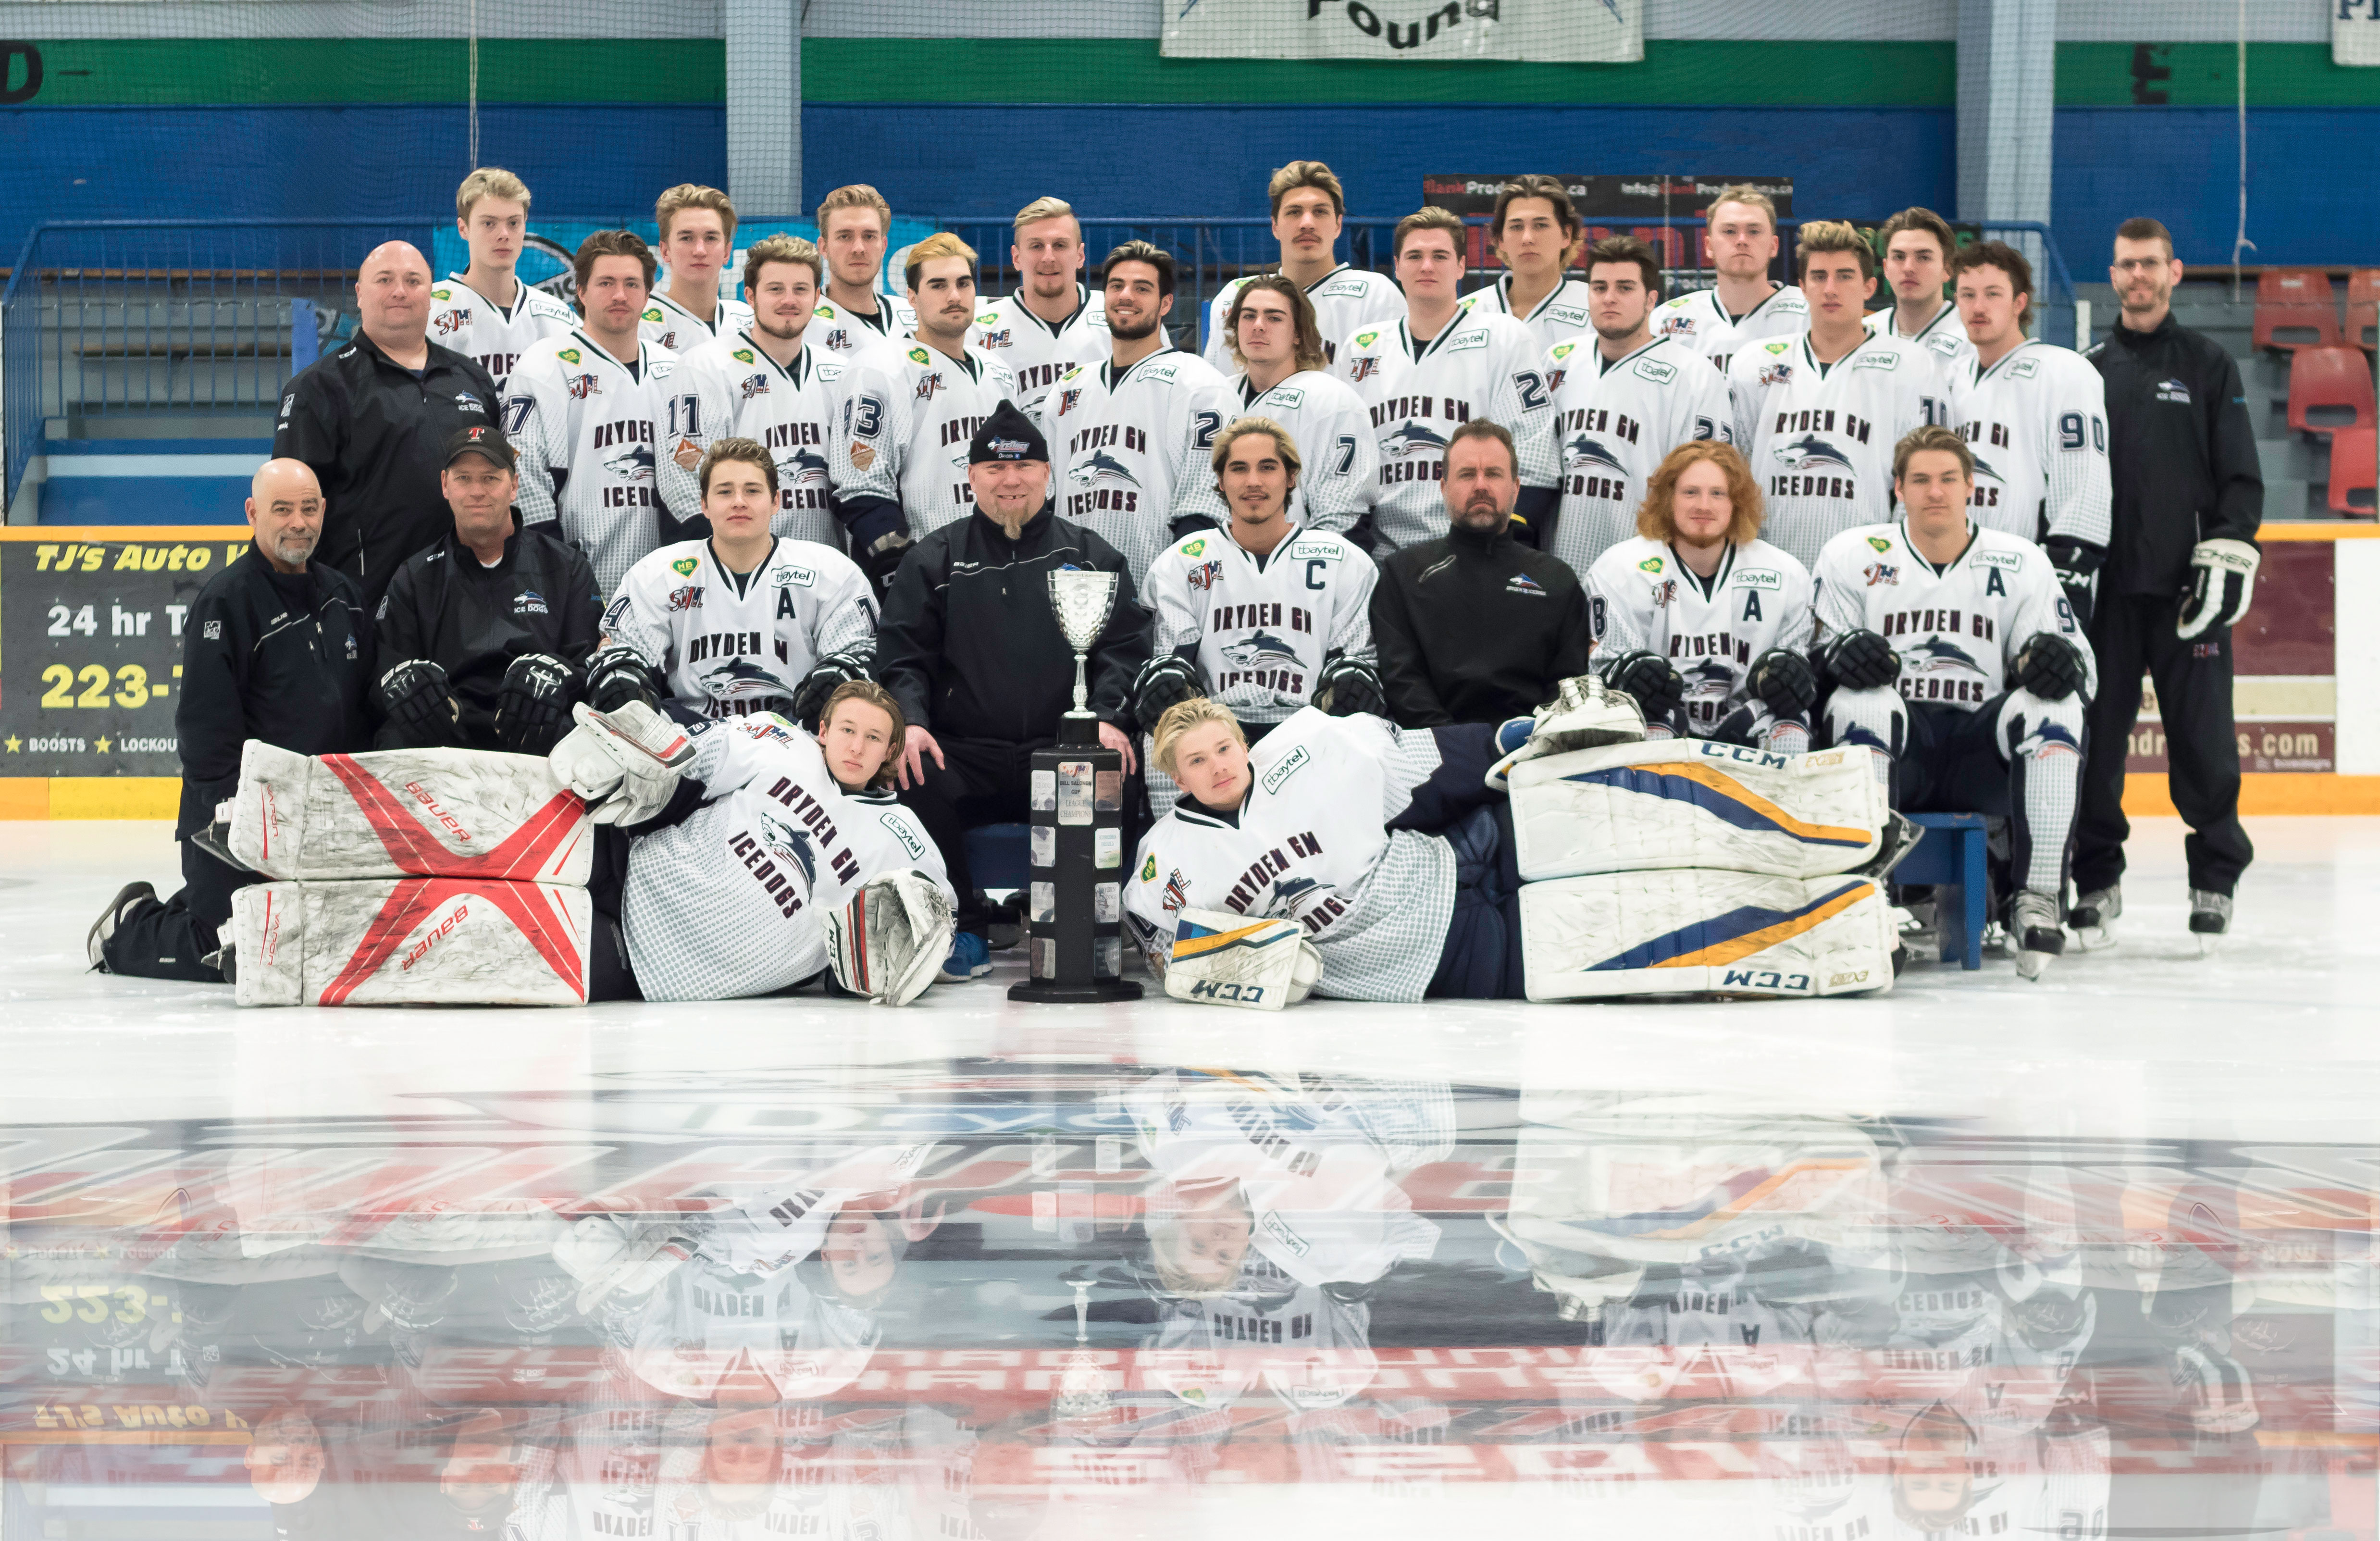 L’image montre des hockeyeurs regroupés pour une photo d’équipe.